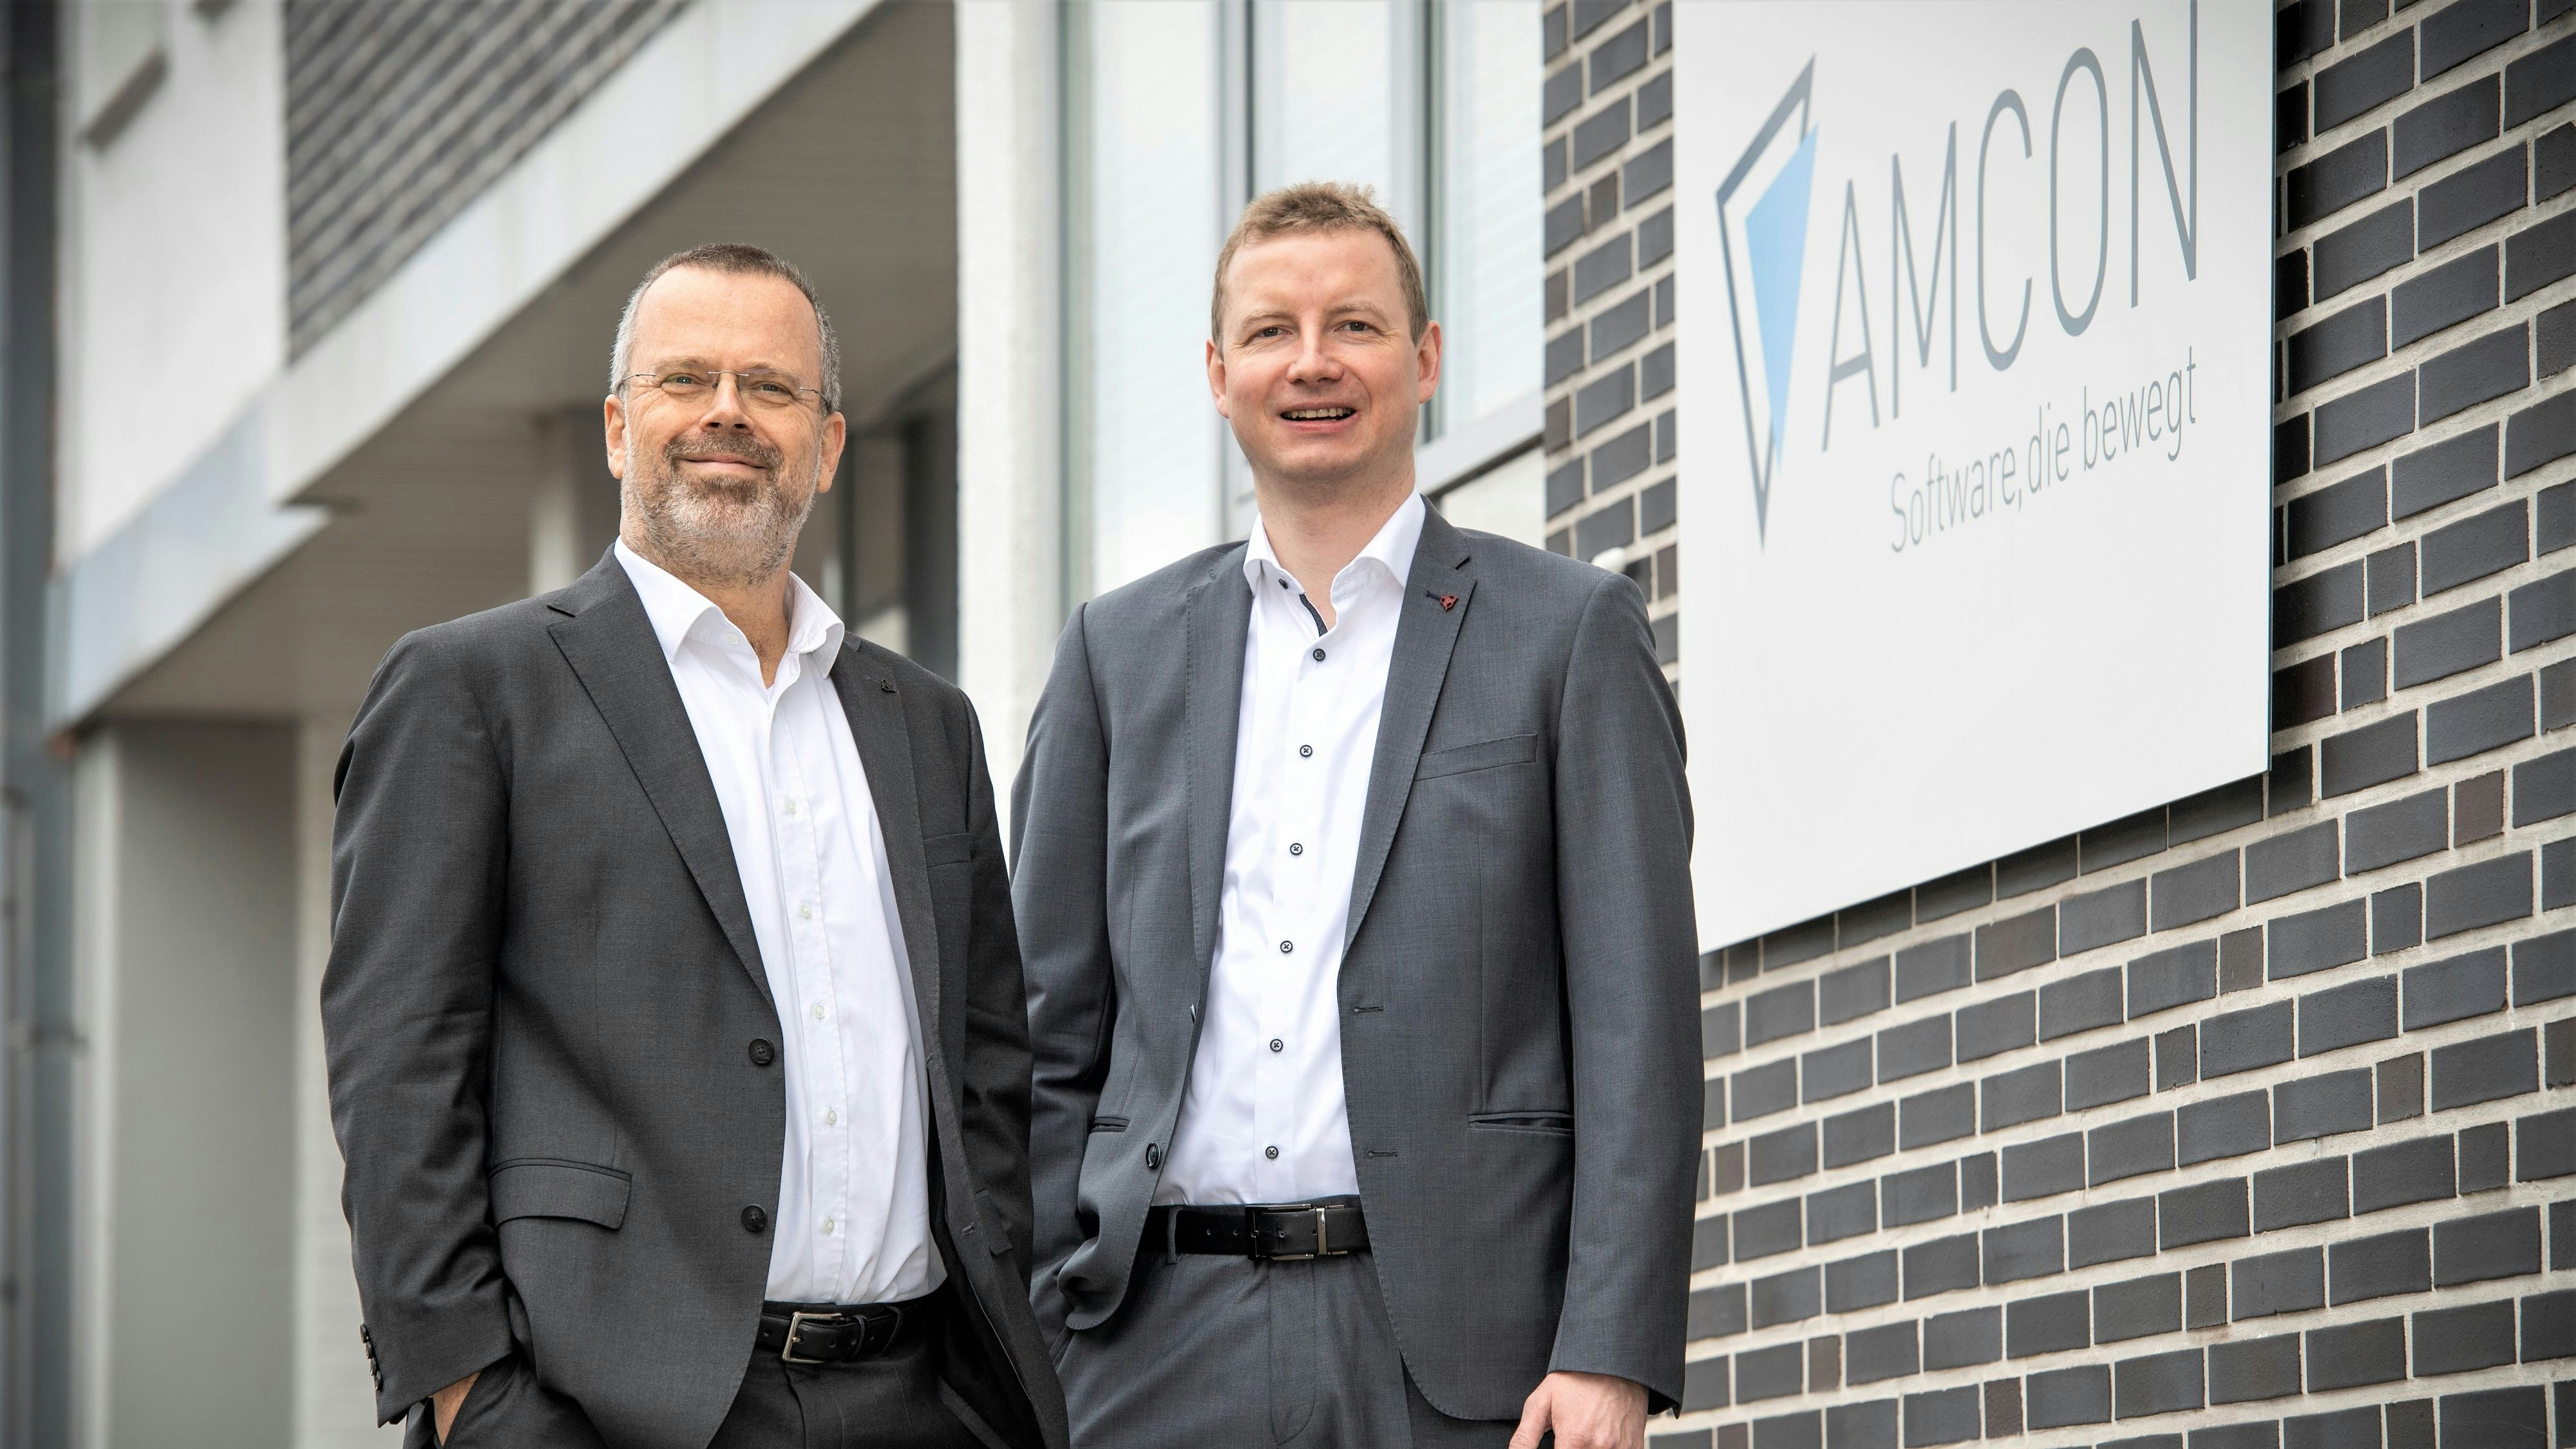 Leiten den innovativen Cloppenburger Softwareentwickler „Amcon“: Die Inhaber und Unternehmer Olaf Clausen (links) und Darius Rauert. Foto: Hölzen / Gerald Lampe